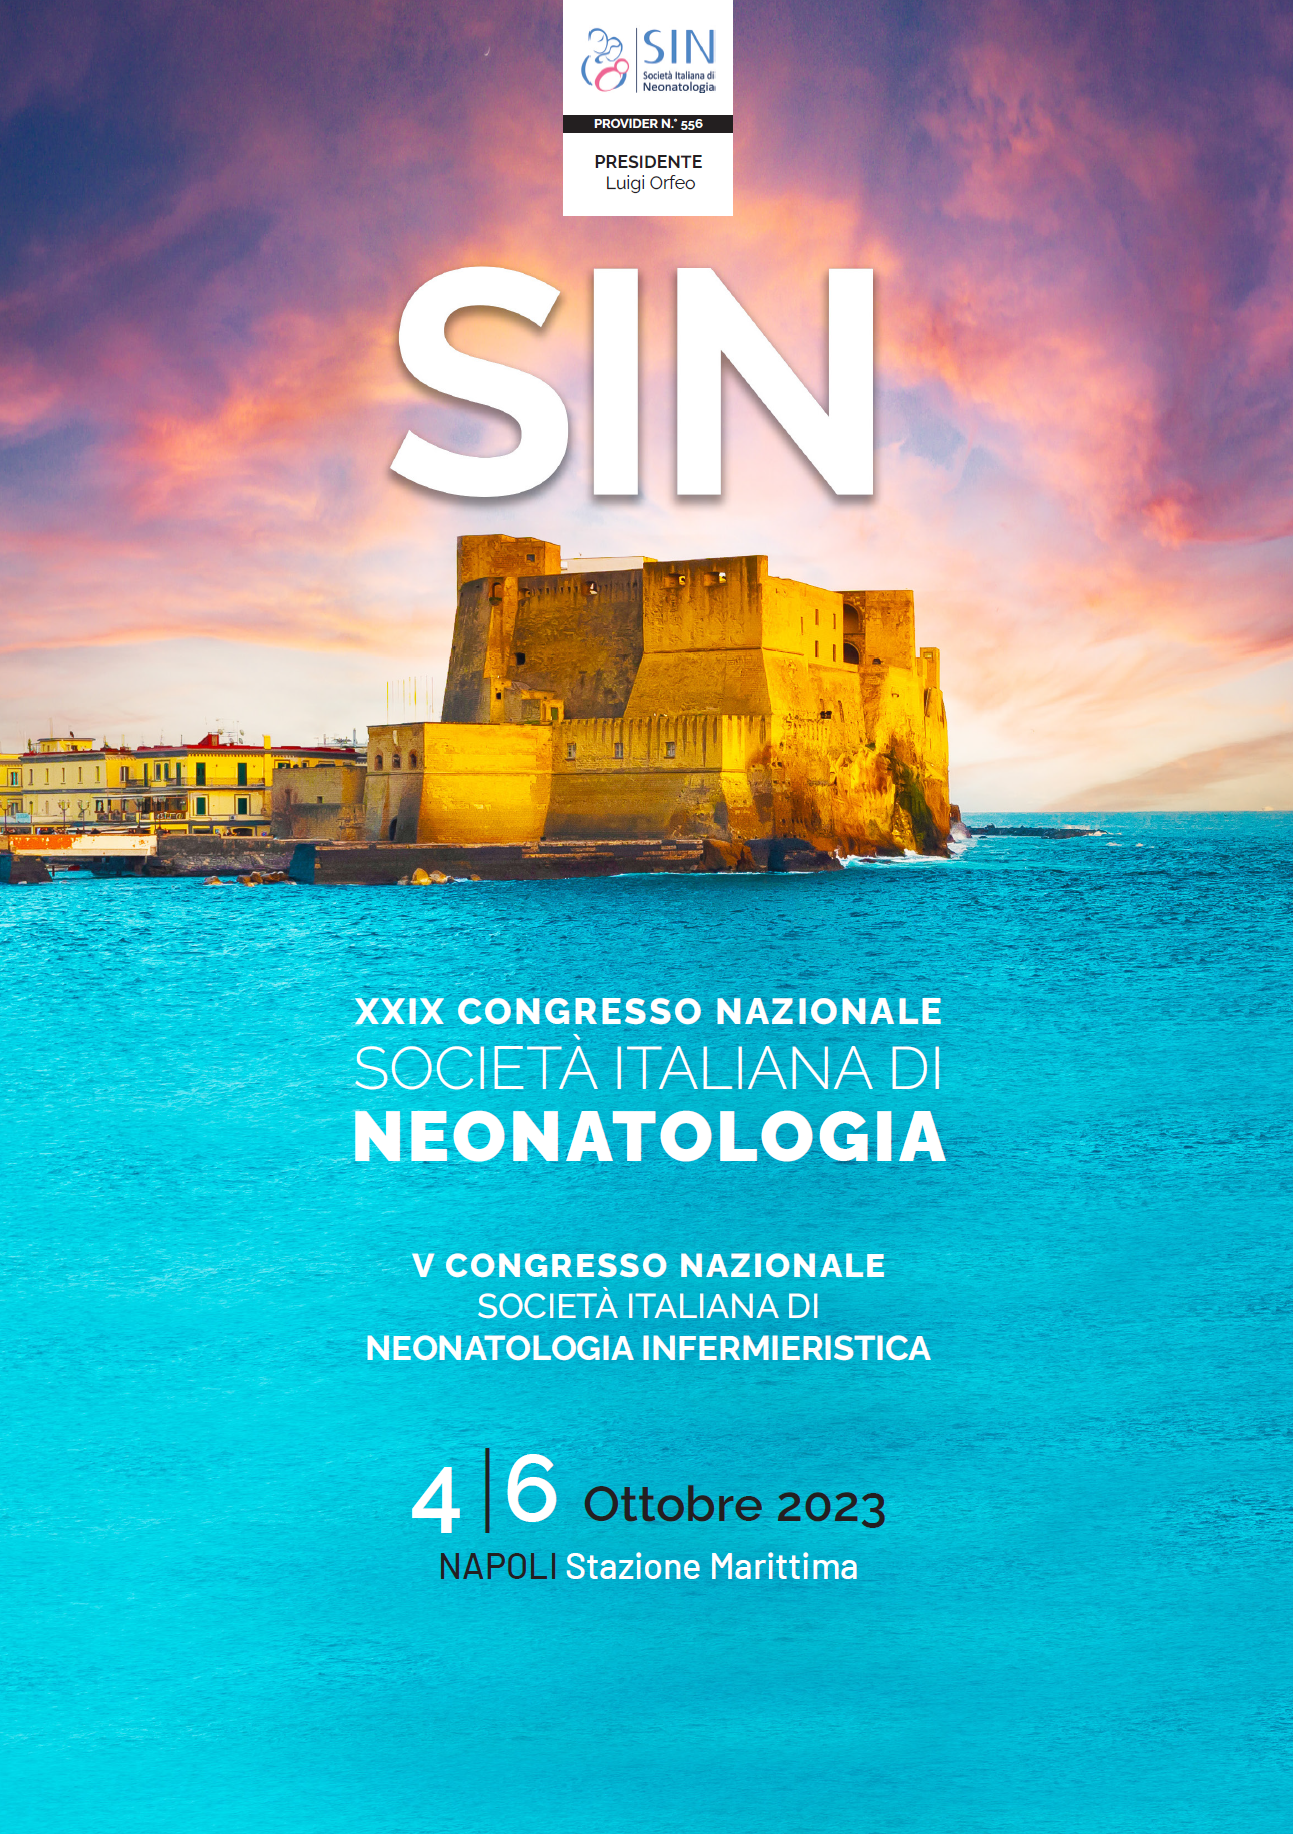 UNO SGUARDO AL FUTURO DELLA NEONATOLOGIA. A Napoli dal 4 al 6 ottobre 2023, il XXIX Congresso Nazionale della SIN